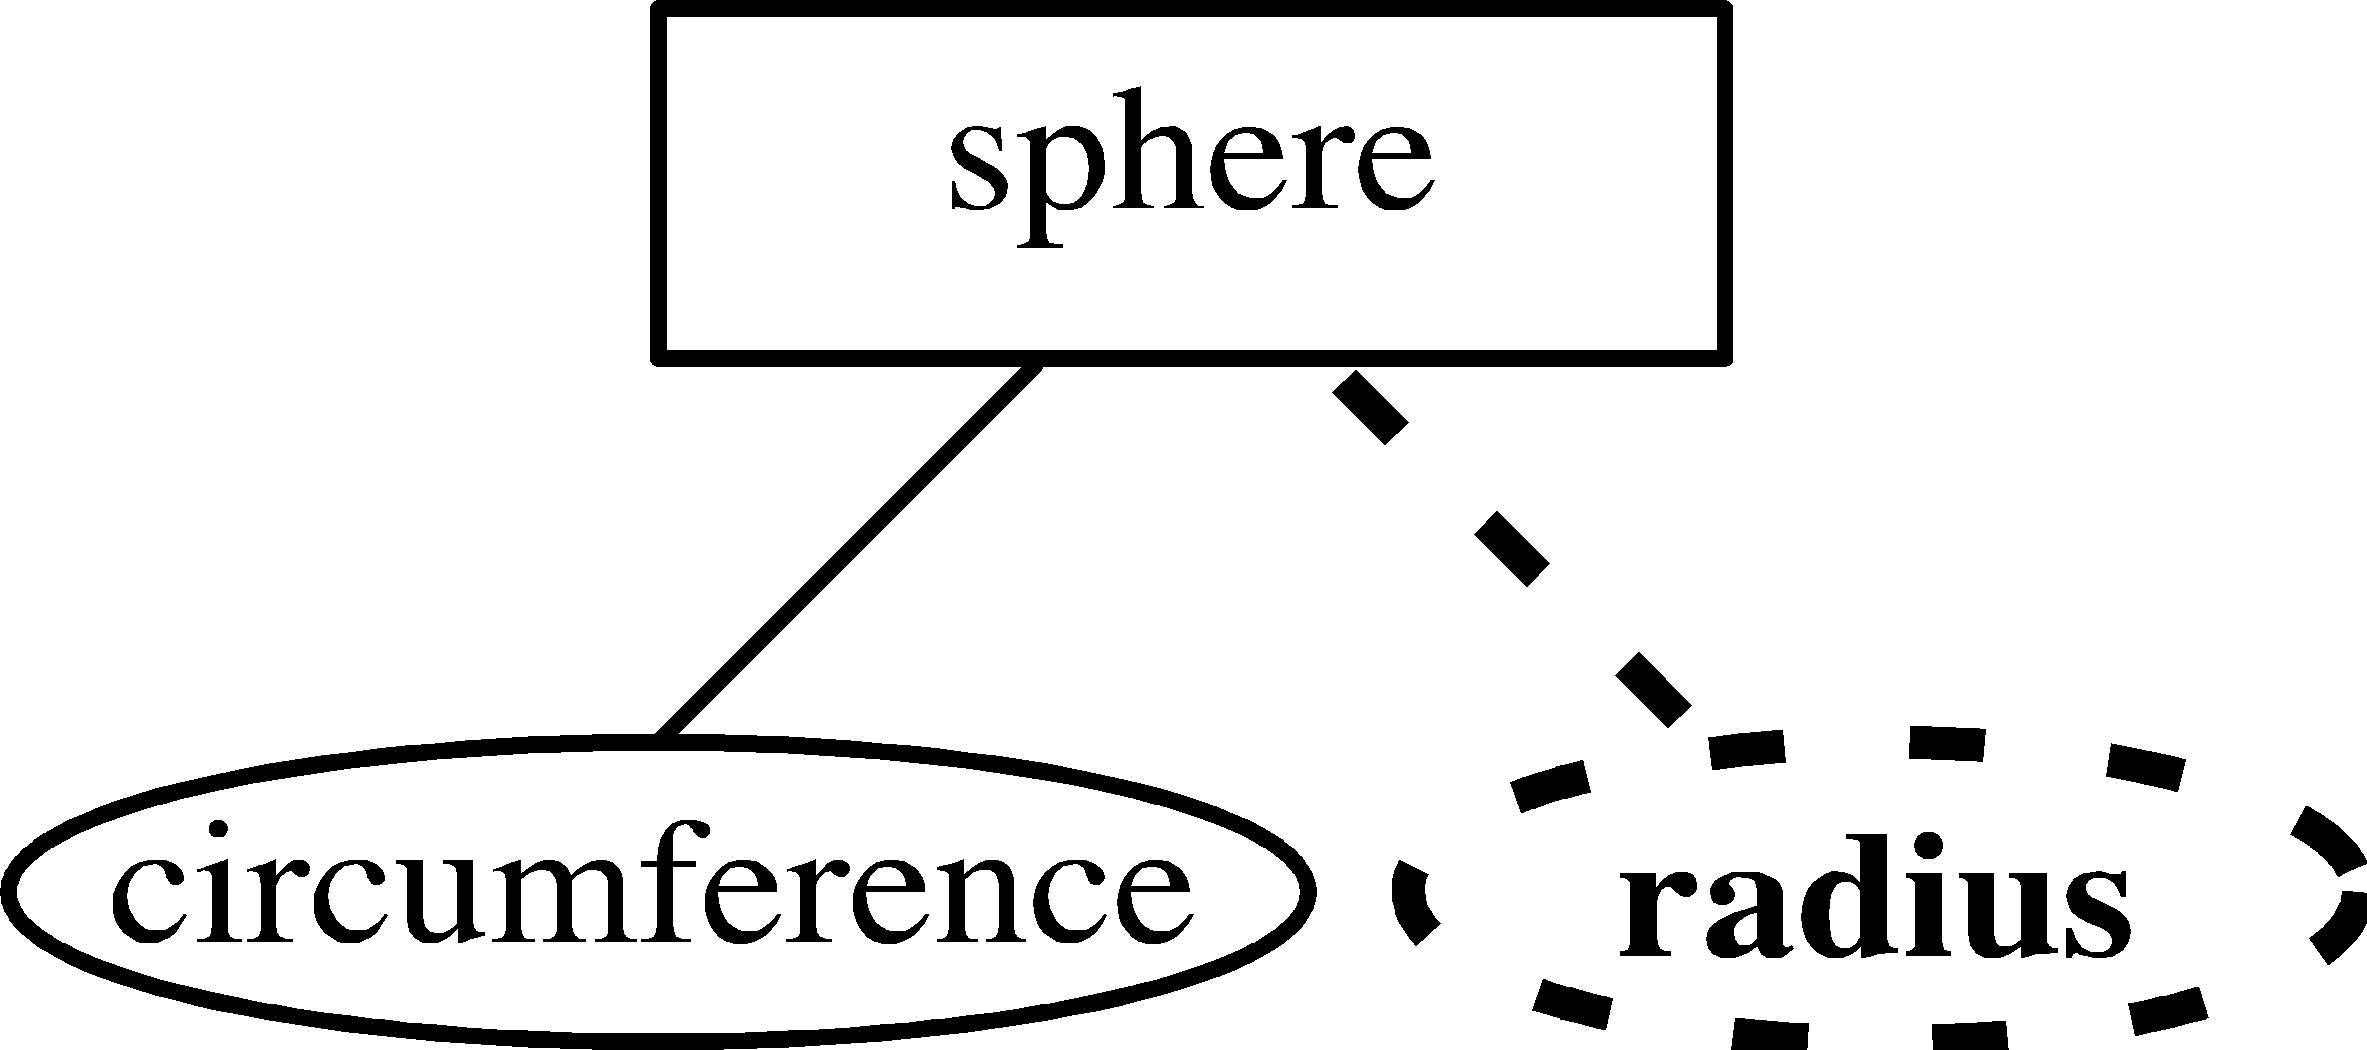 Entity-Relationship Model intended for Er Diagram Nullable